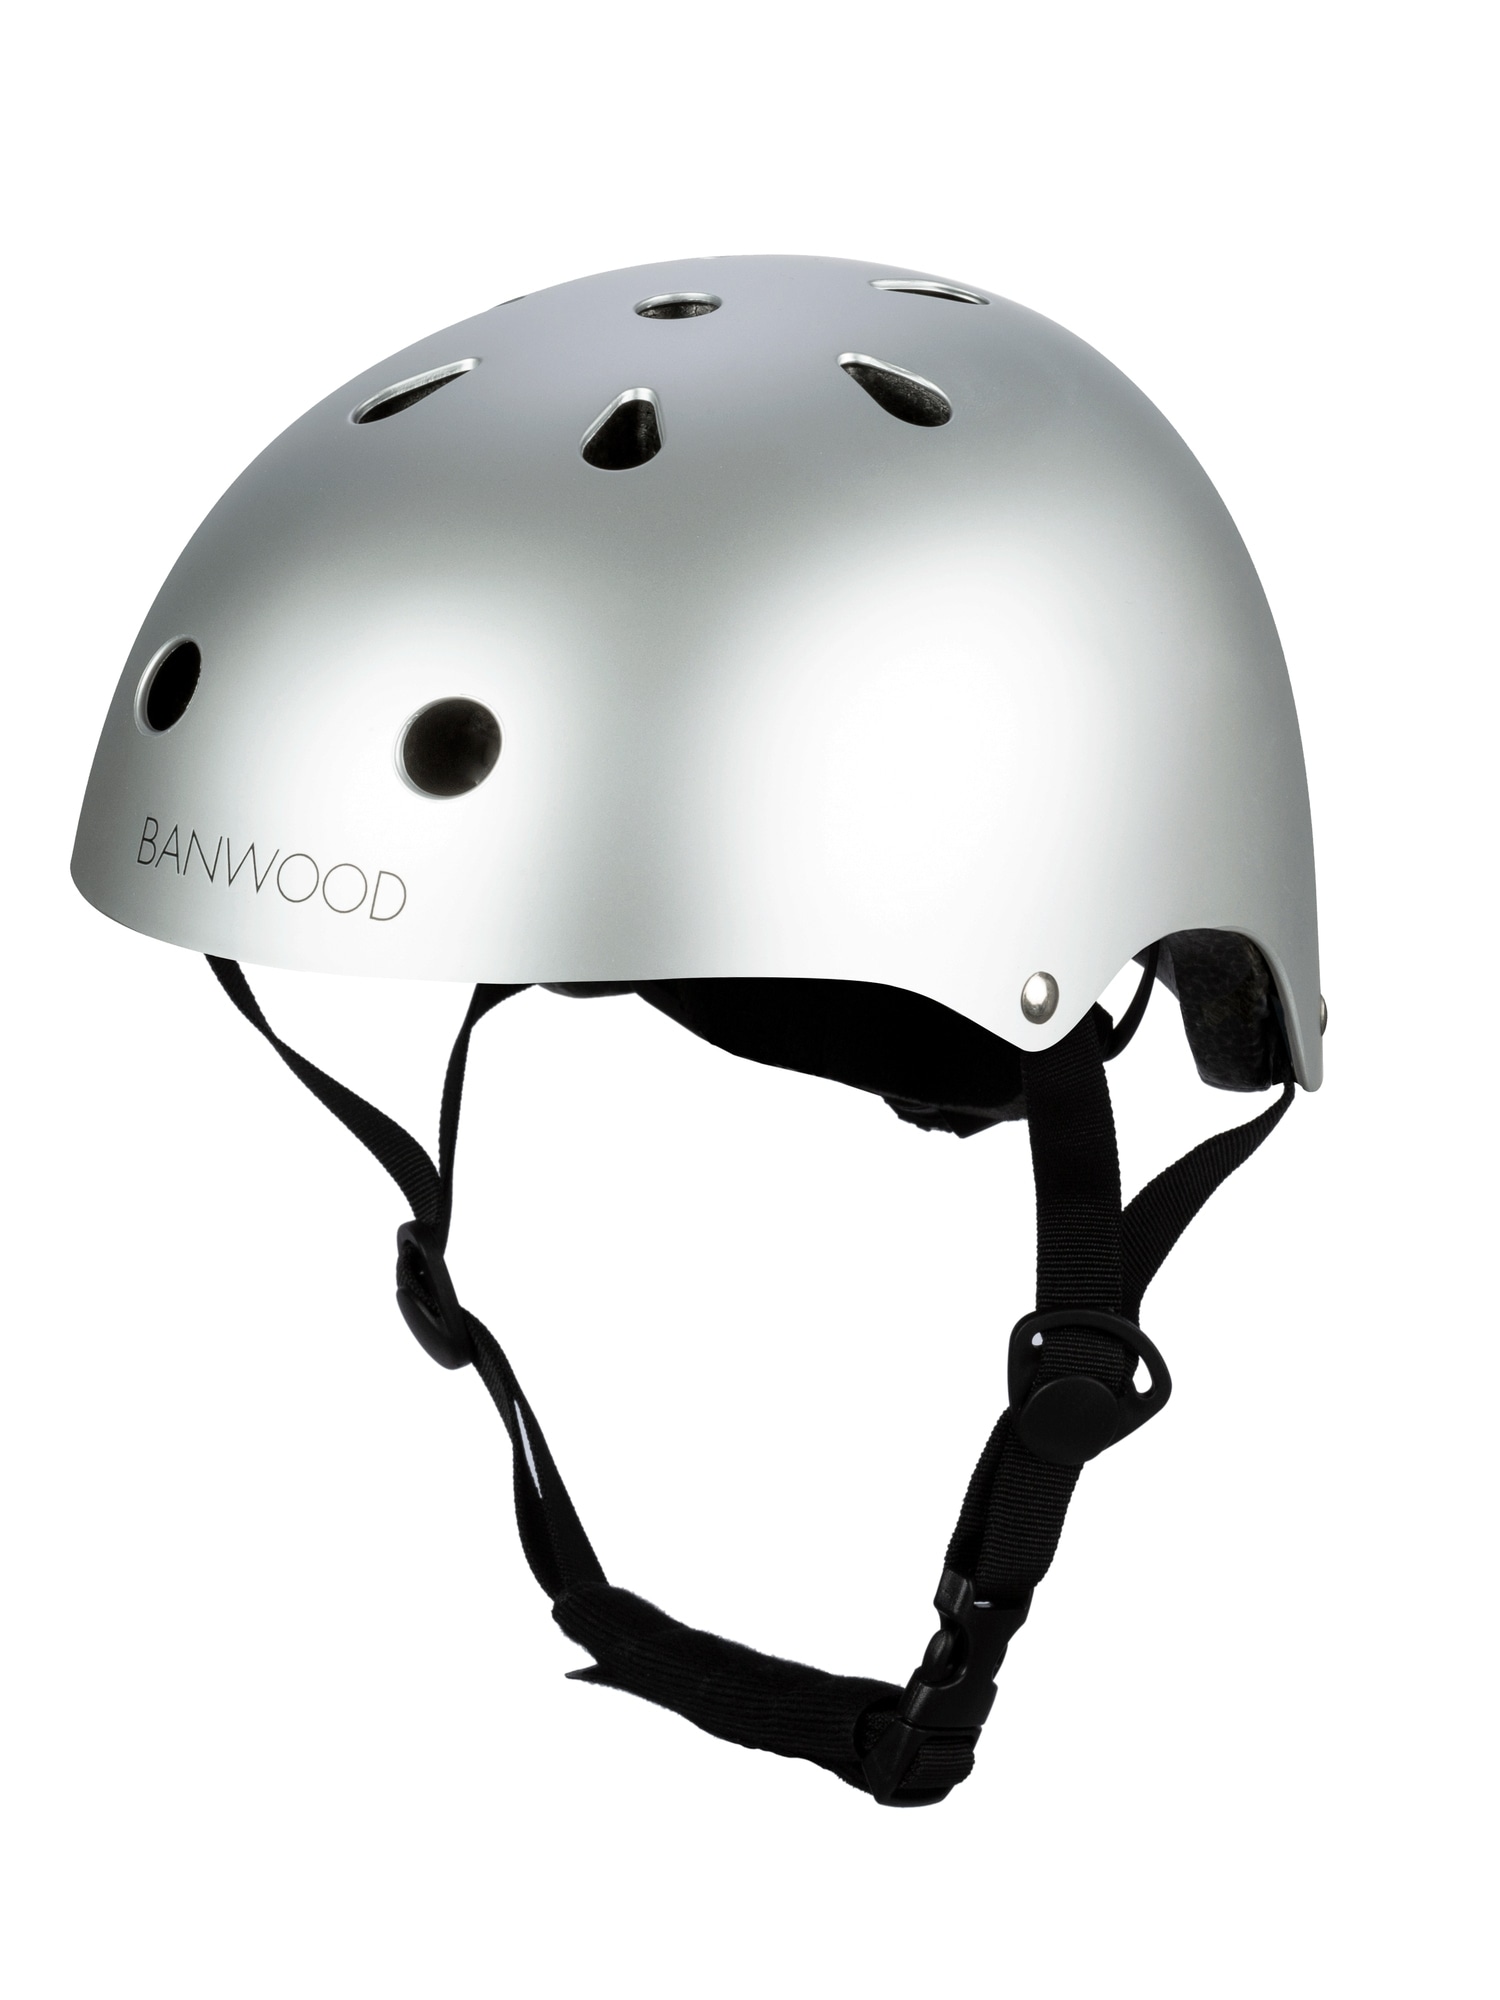 Gap Helmet